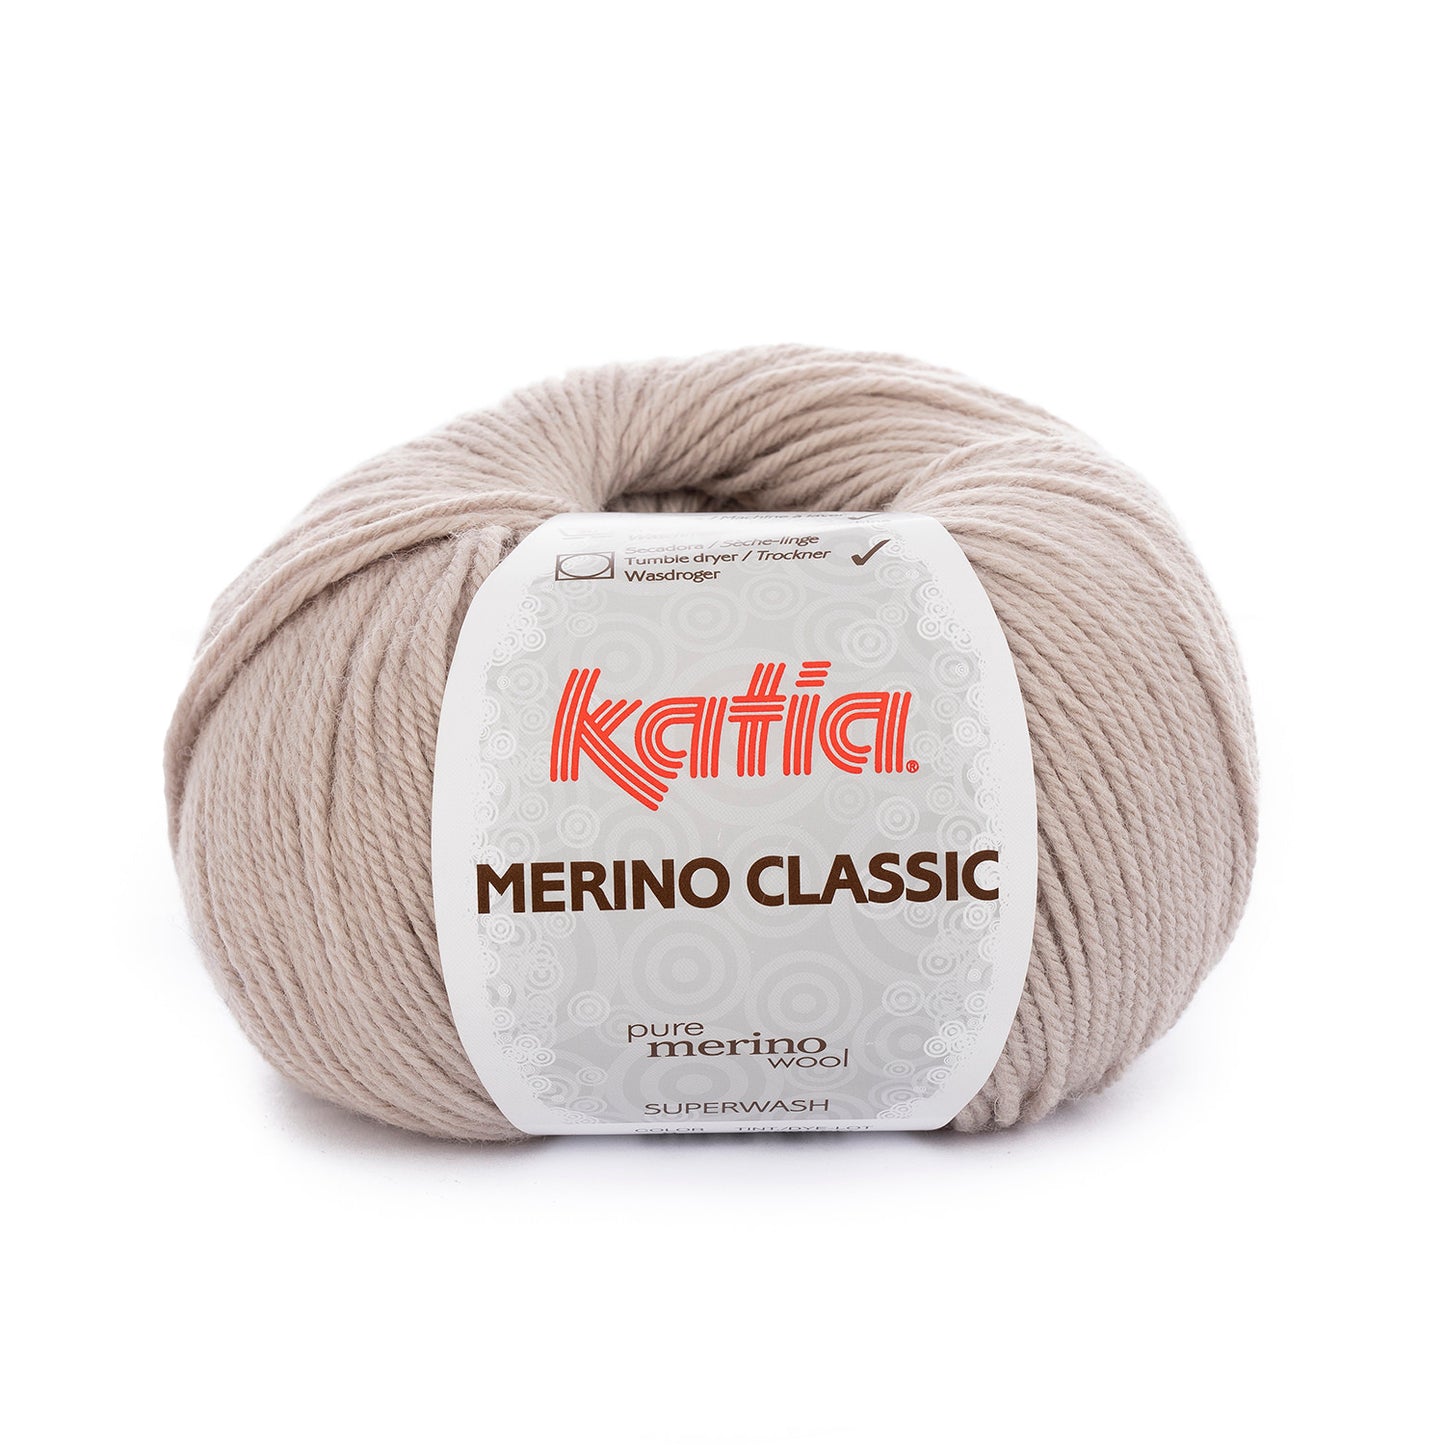 Merino classic color 9.